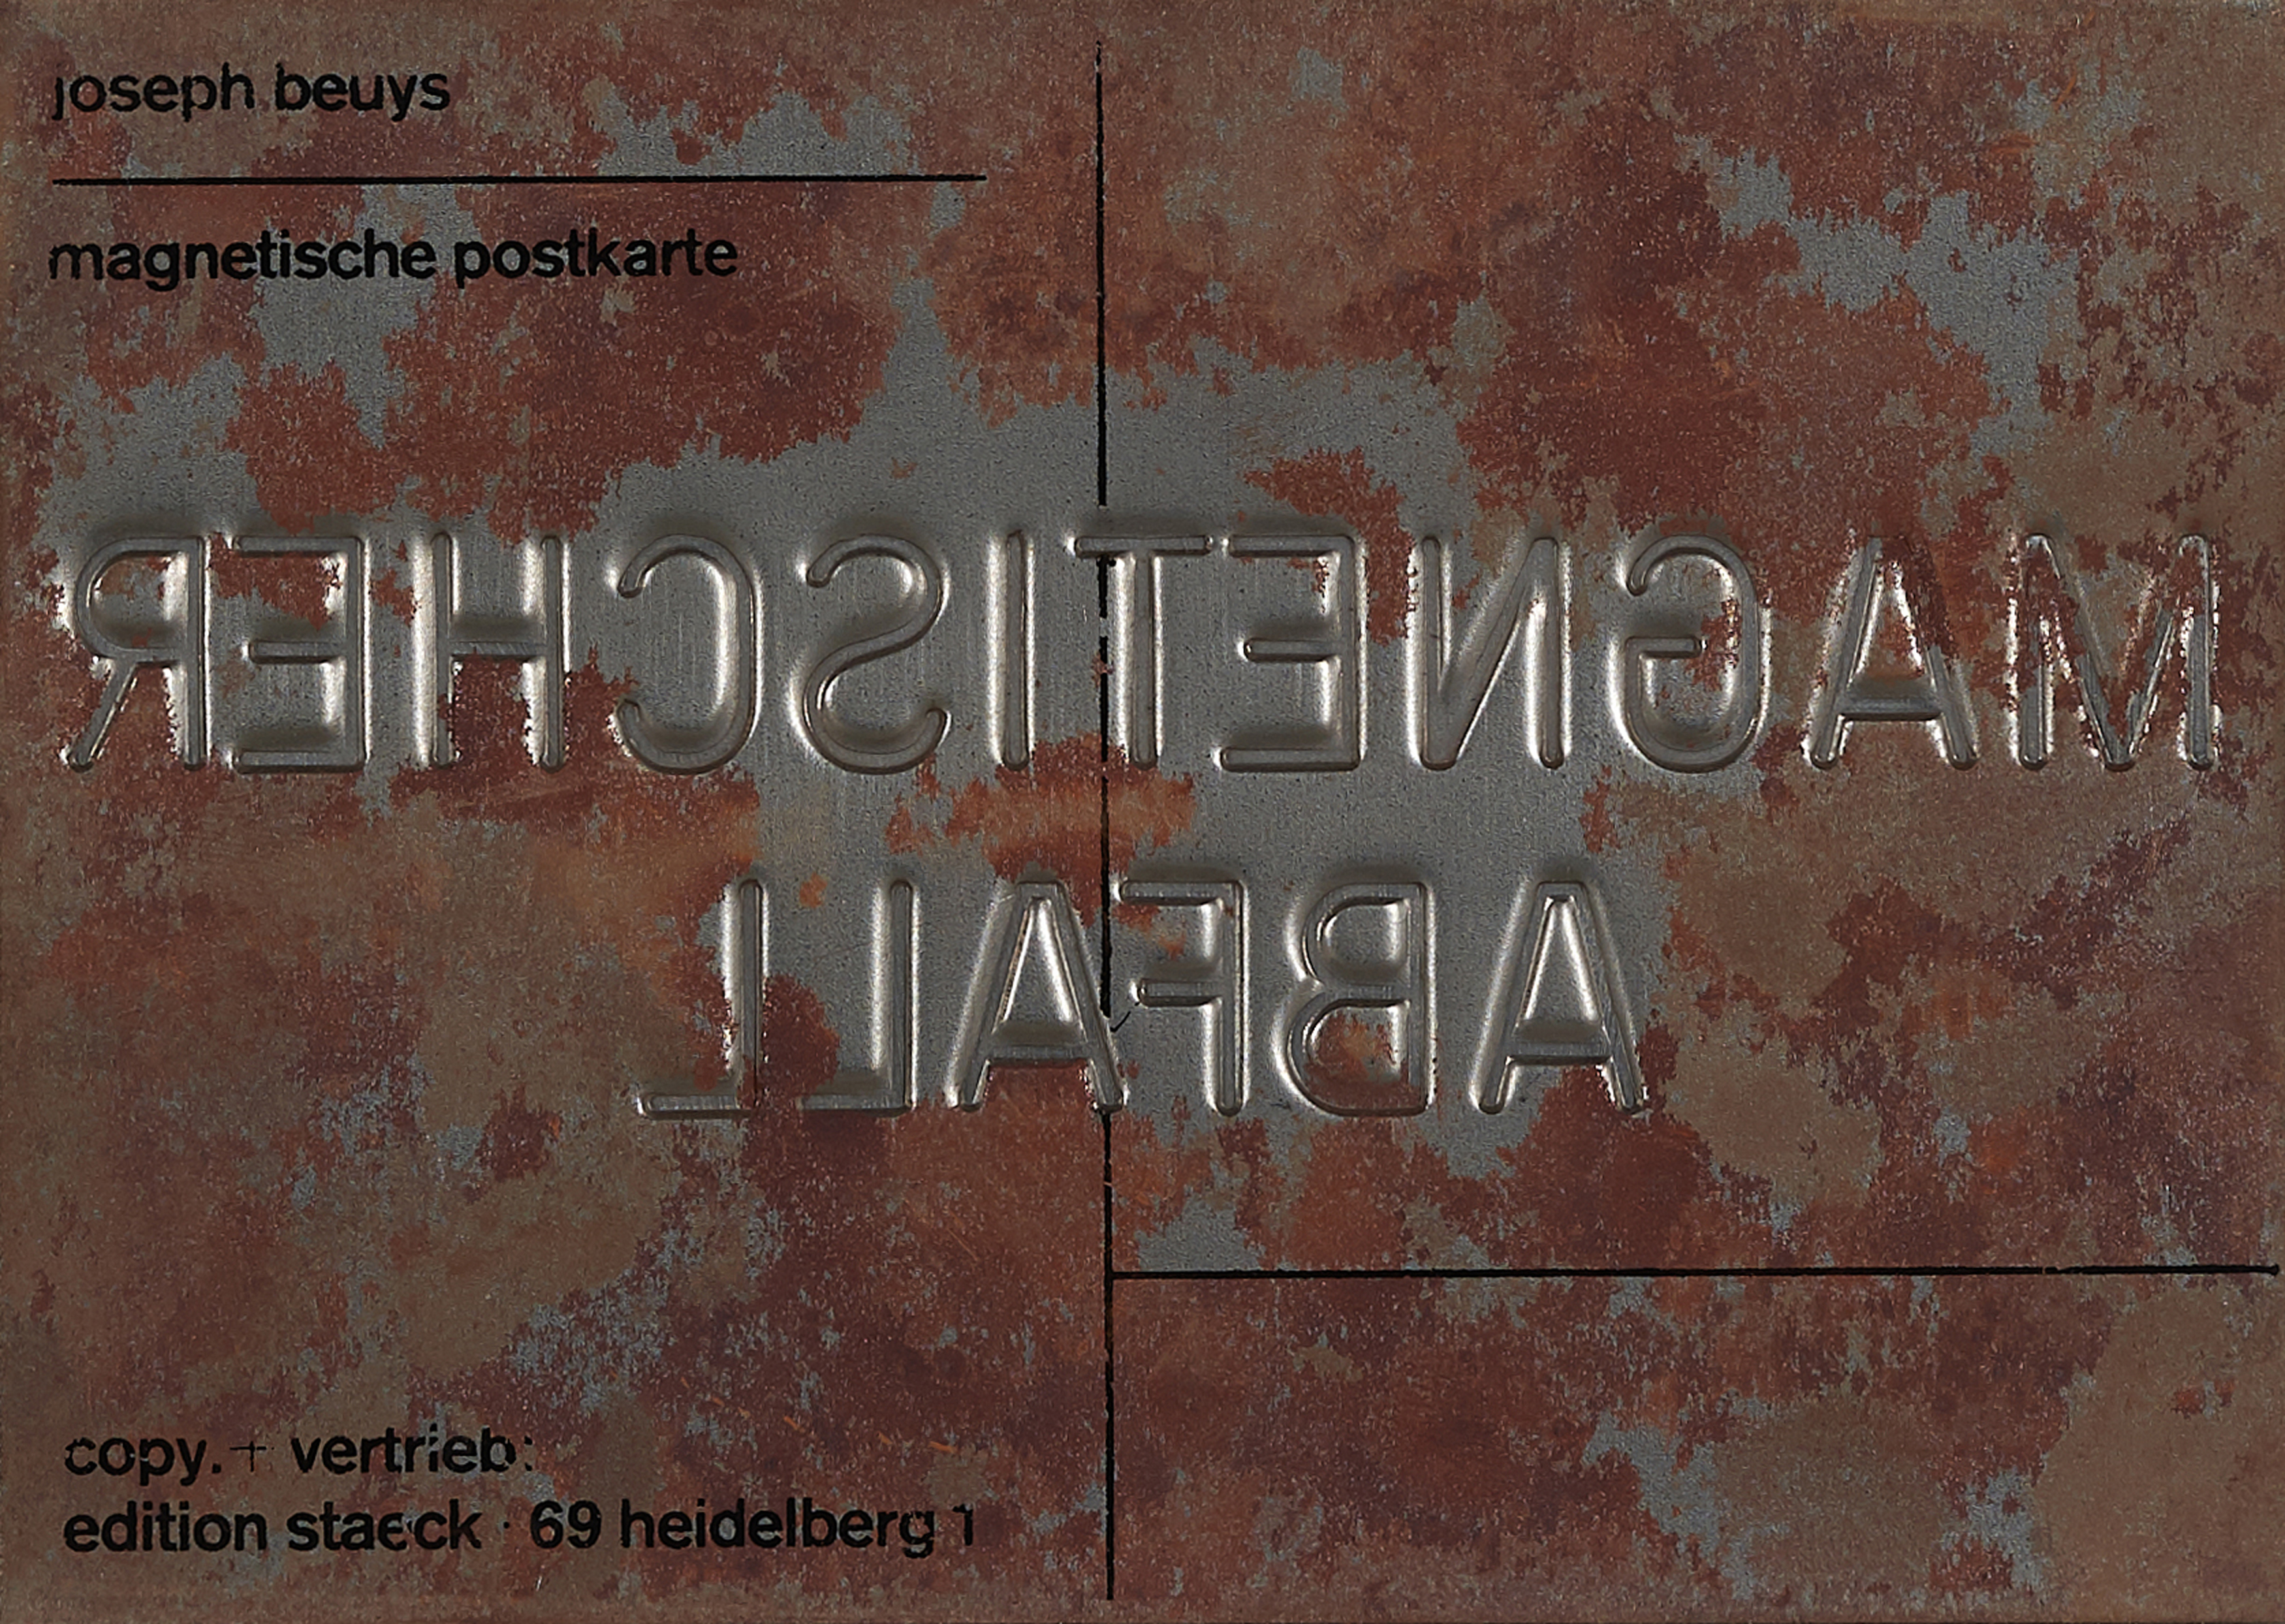 Joseph Beuys: Magnetischer Abfall – Objekt kaufen – Edition Staeck